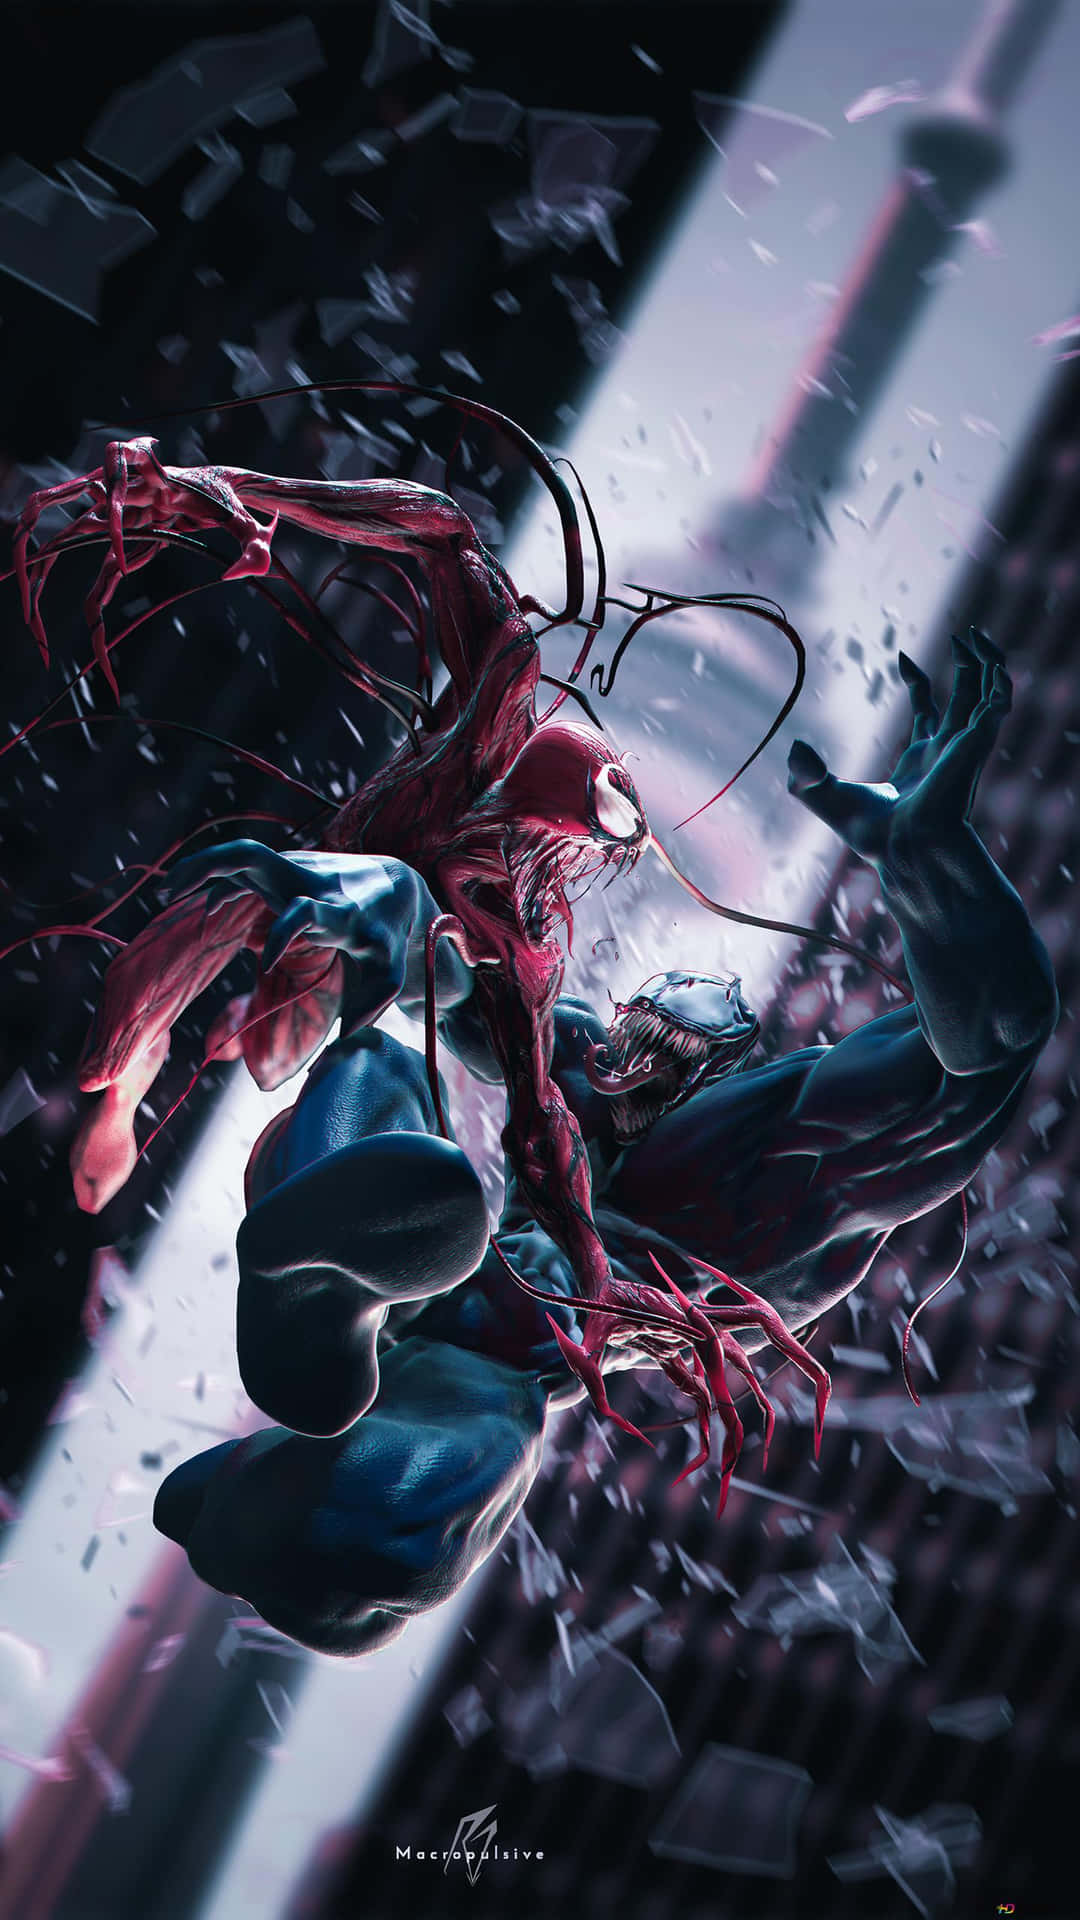 Den ultimate kamp mellem Venom og Carnage vises på denne baggrund. Wallpaper